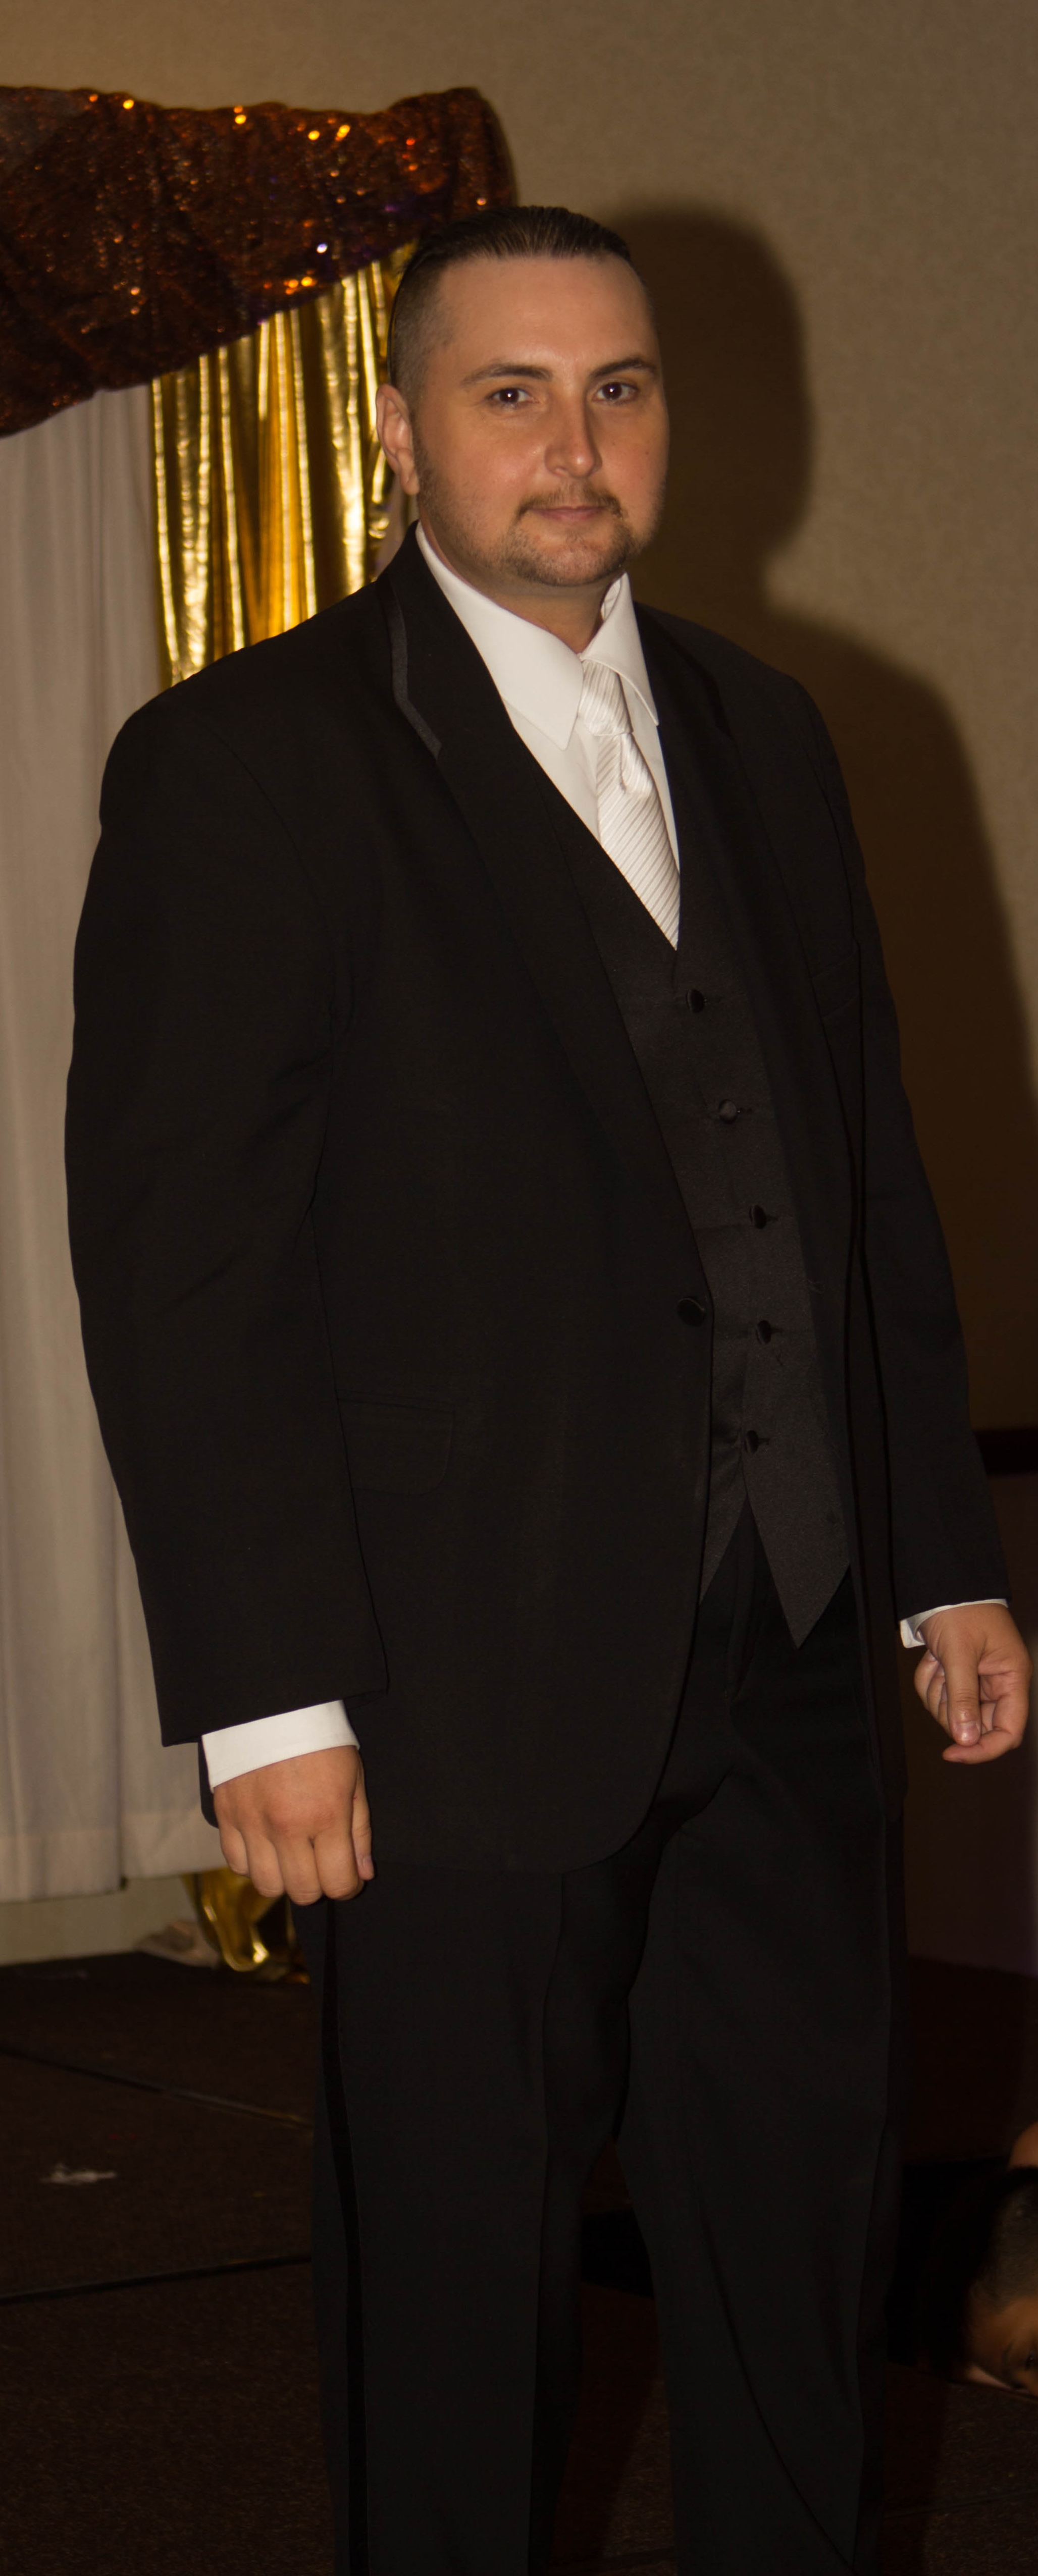 Los Angeles Fashion Shows 2015 Michael Kors Tuxedo